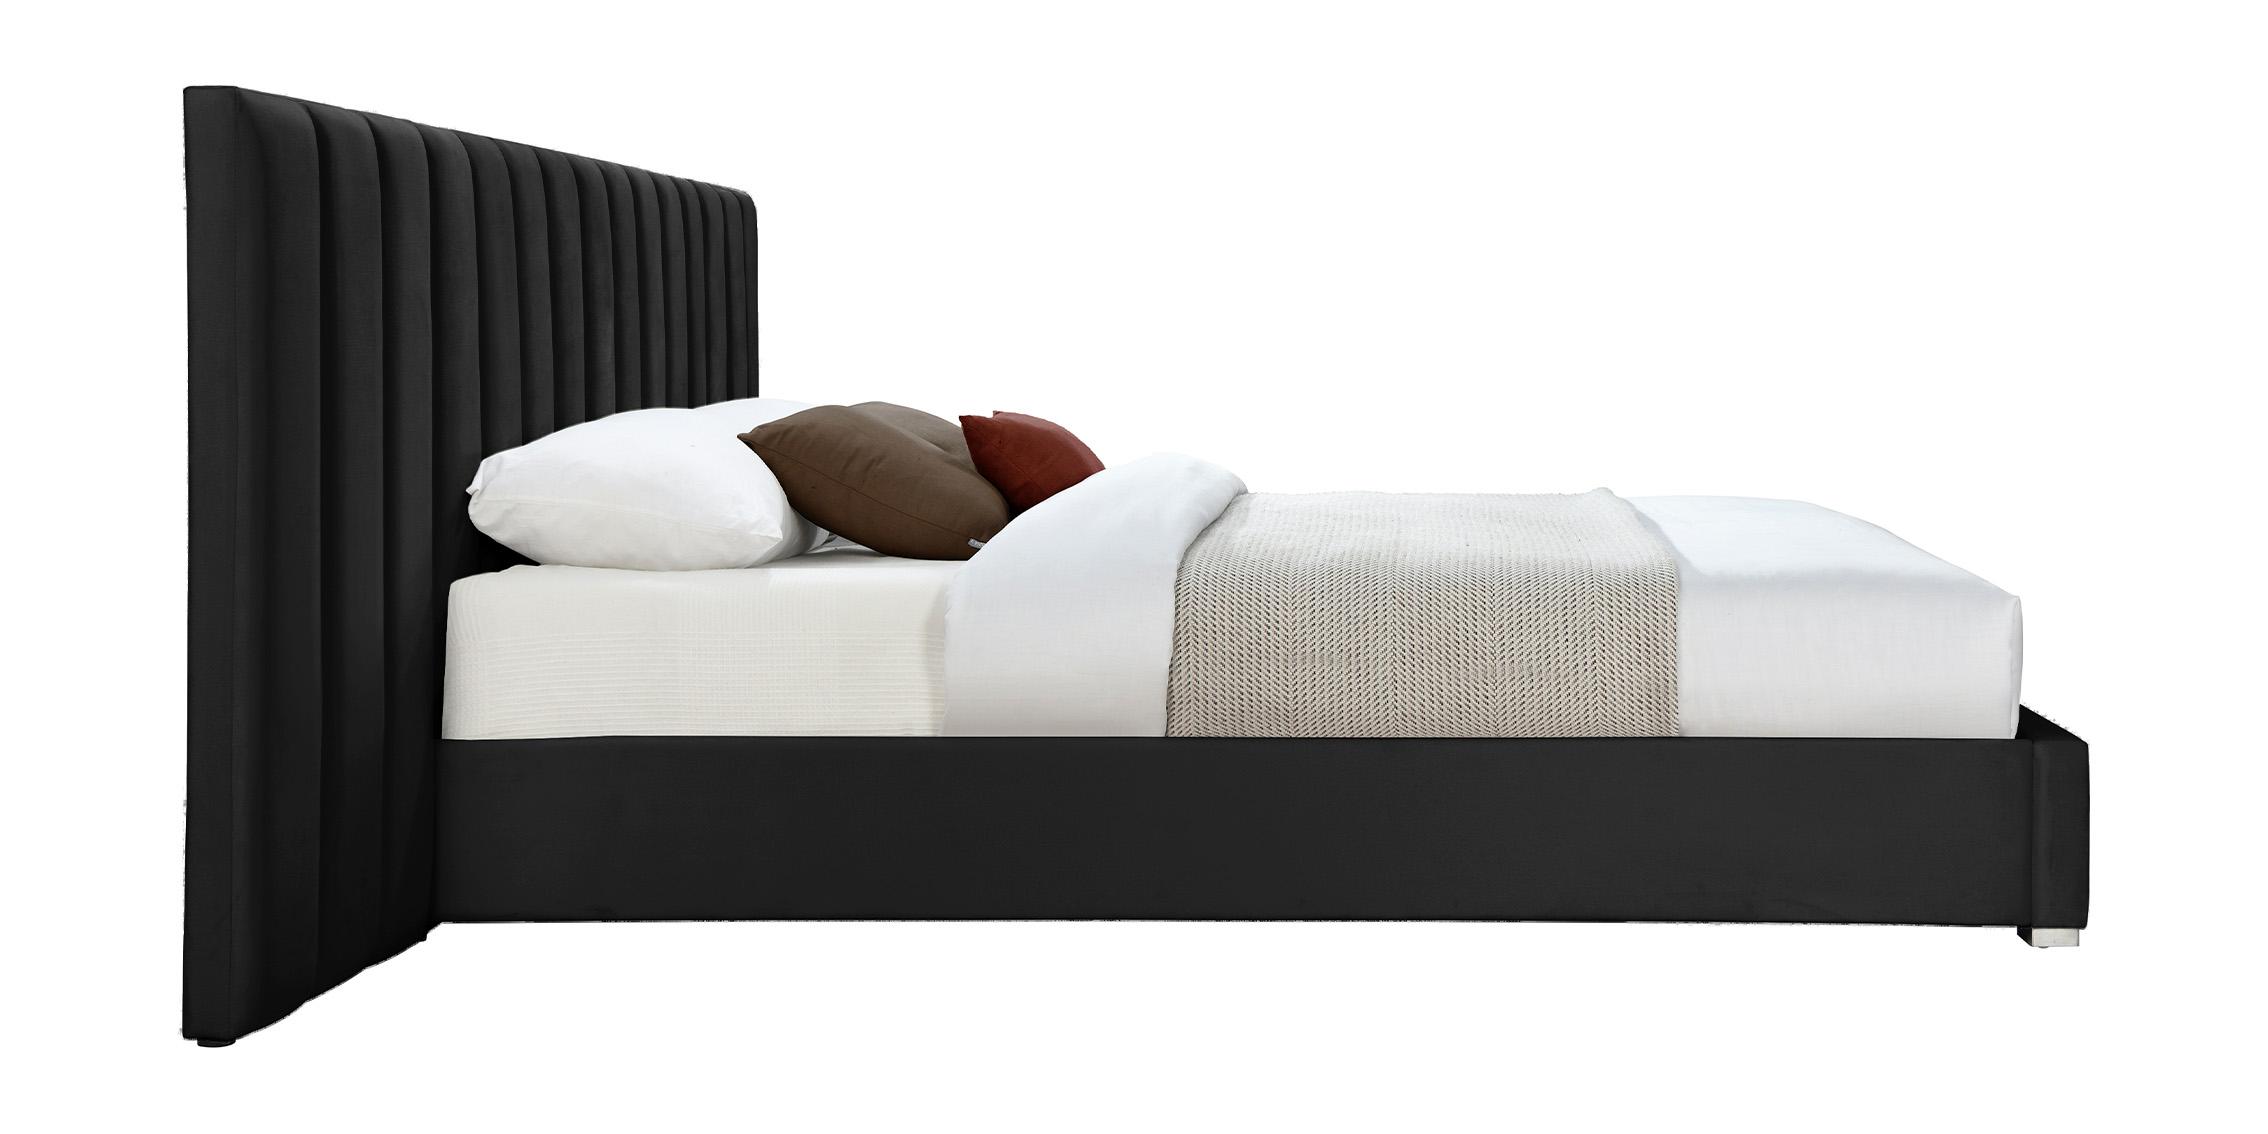 

    
PabloBlack-K Meridian Furniture Platform Bed
